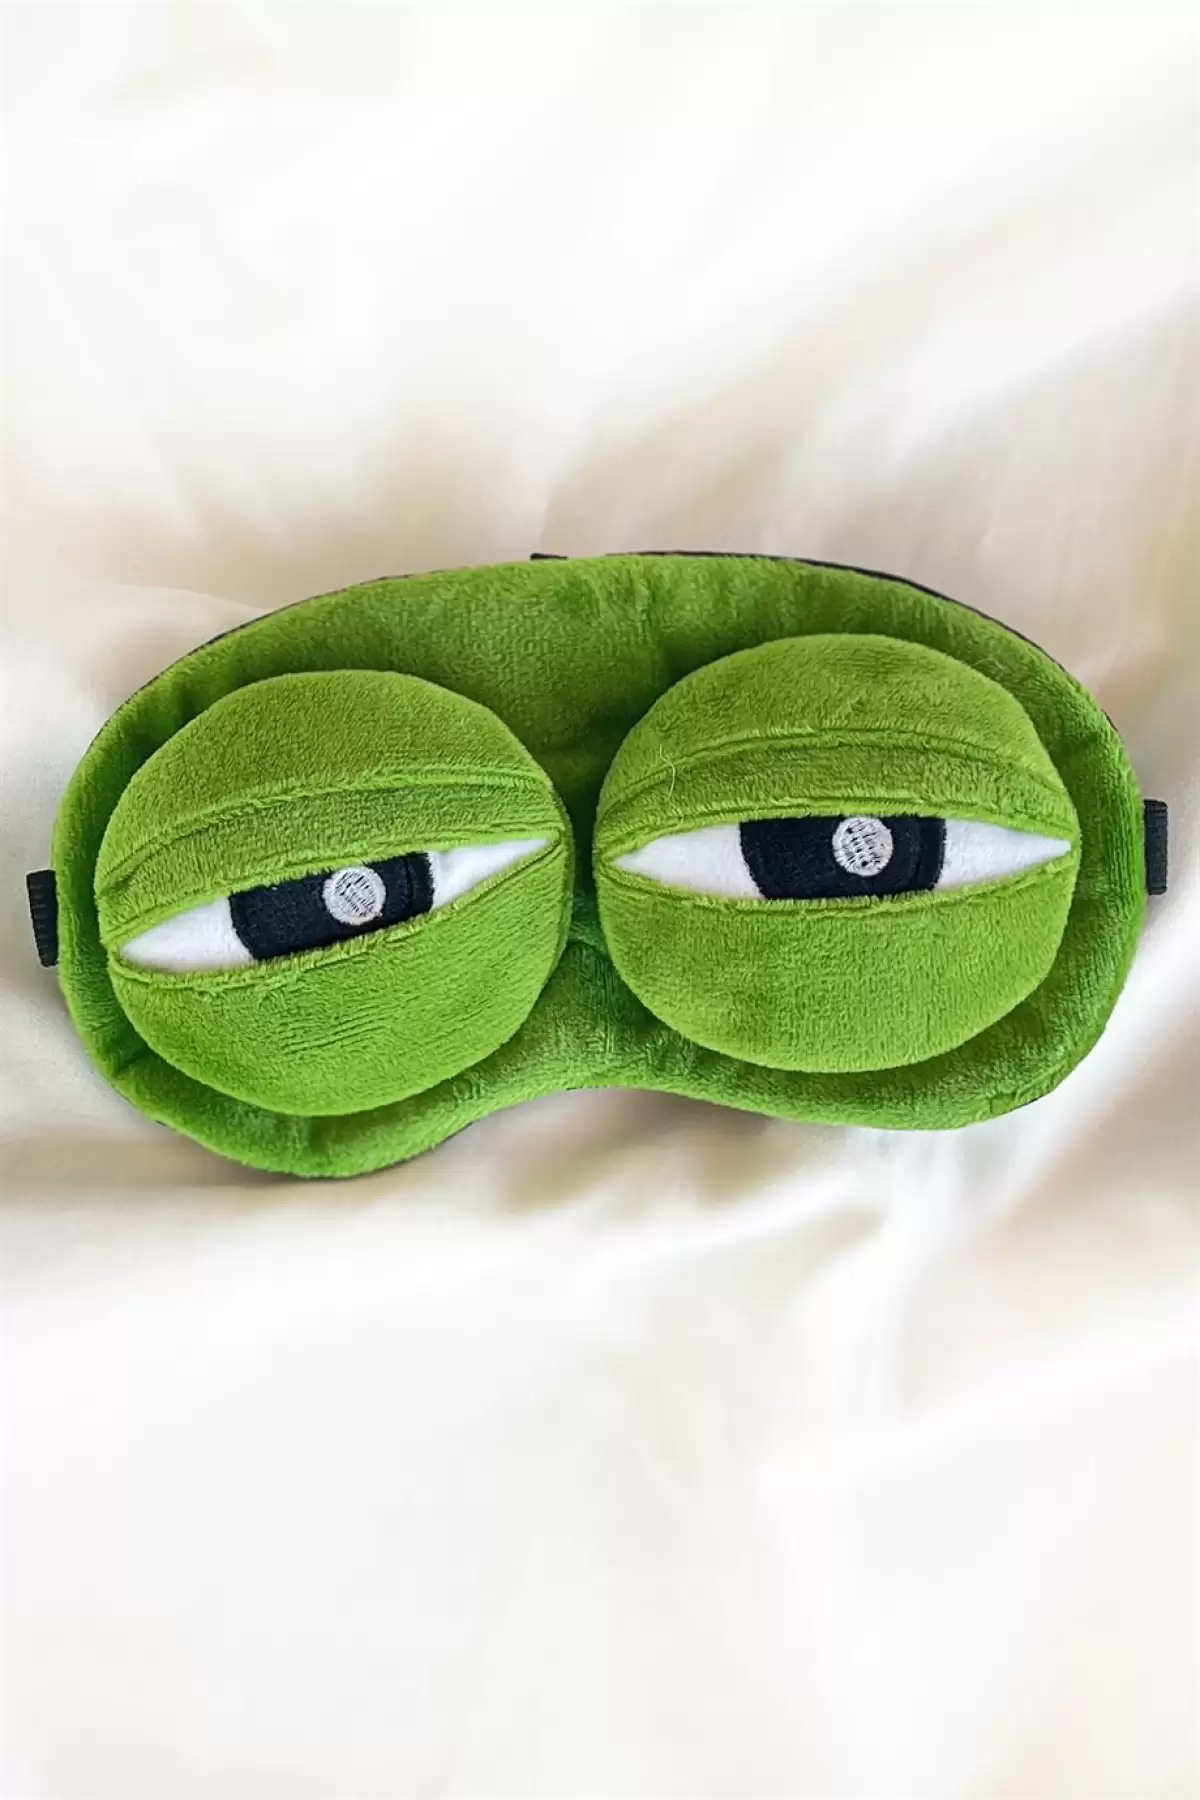 Yeşil Renk Kurbağa Figürlü Uyku Bandı